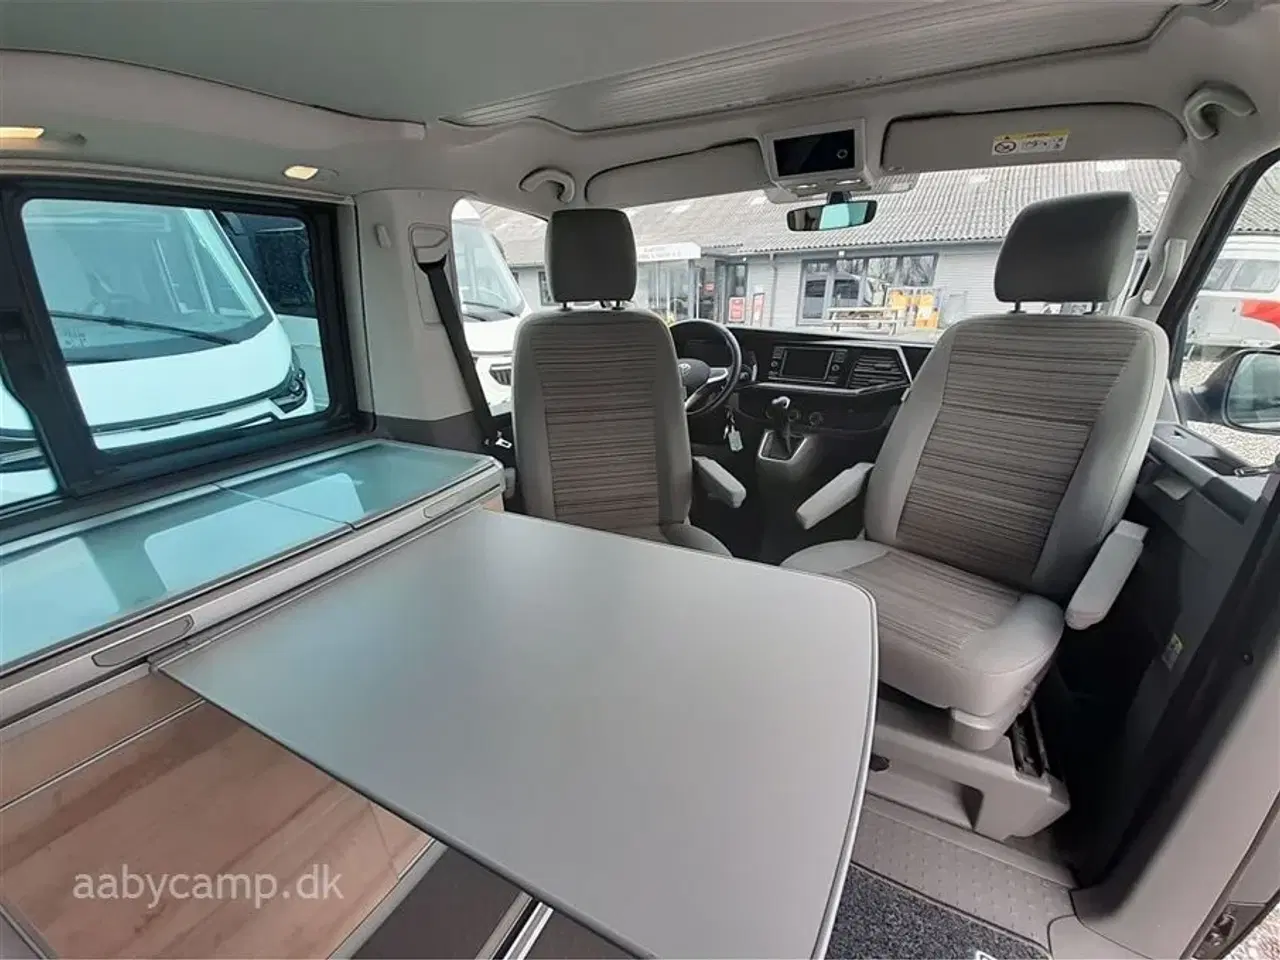 Billede 12 - 2021 - VW California Coast Aut.   Lille kompakt camper. DSG. Adaptiv fartpilot. sommer/vinterhjul. undervognsbehandlet fra ny.